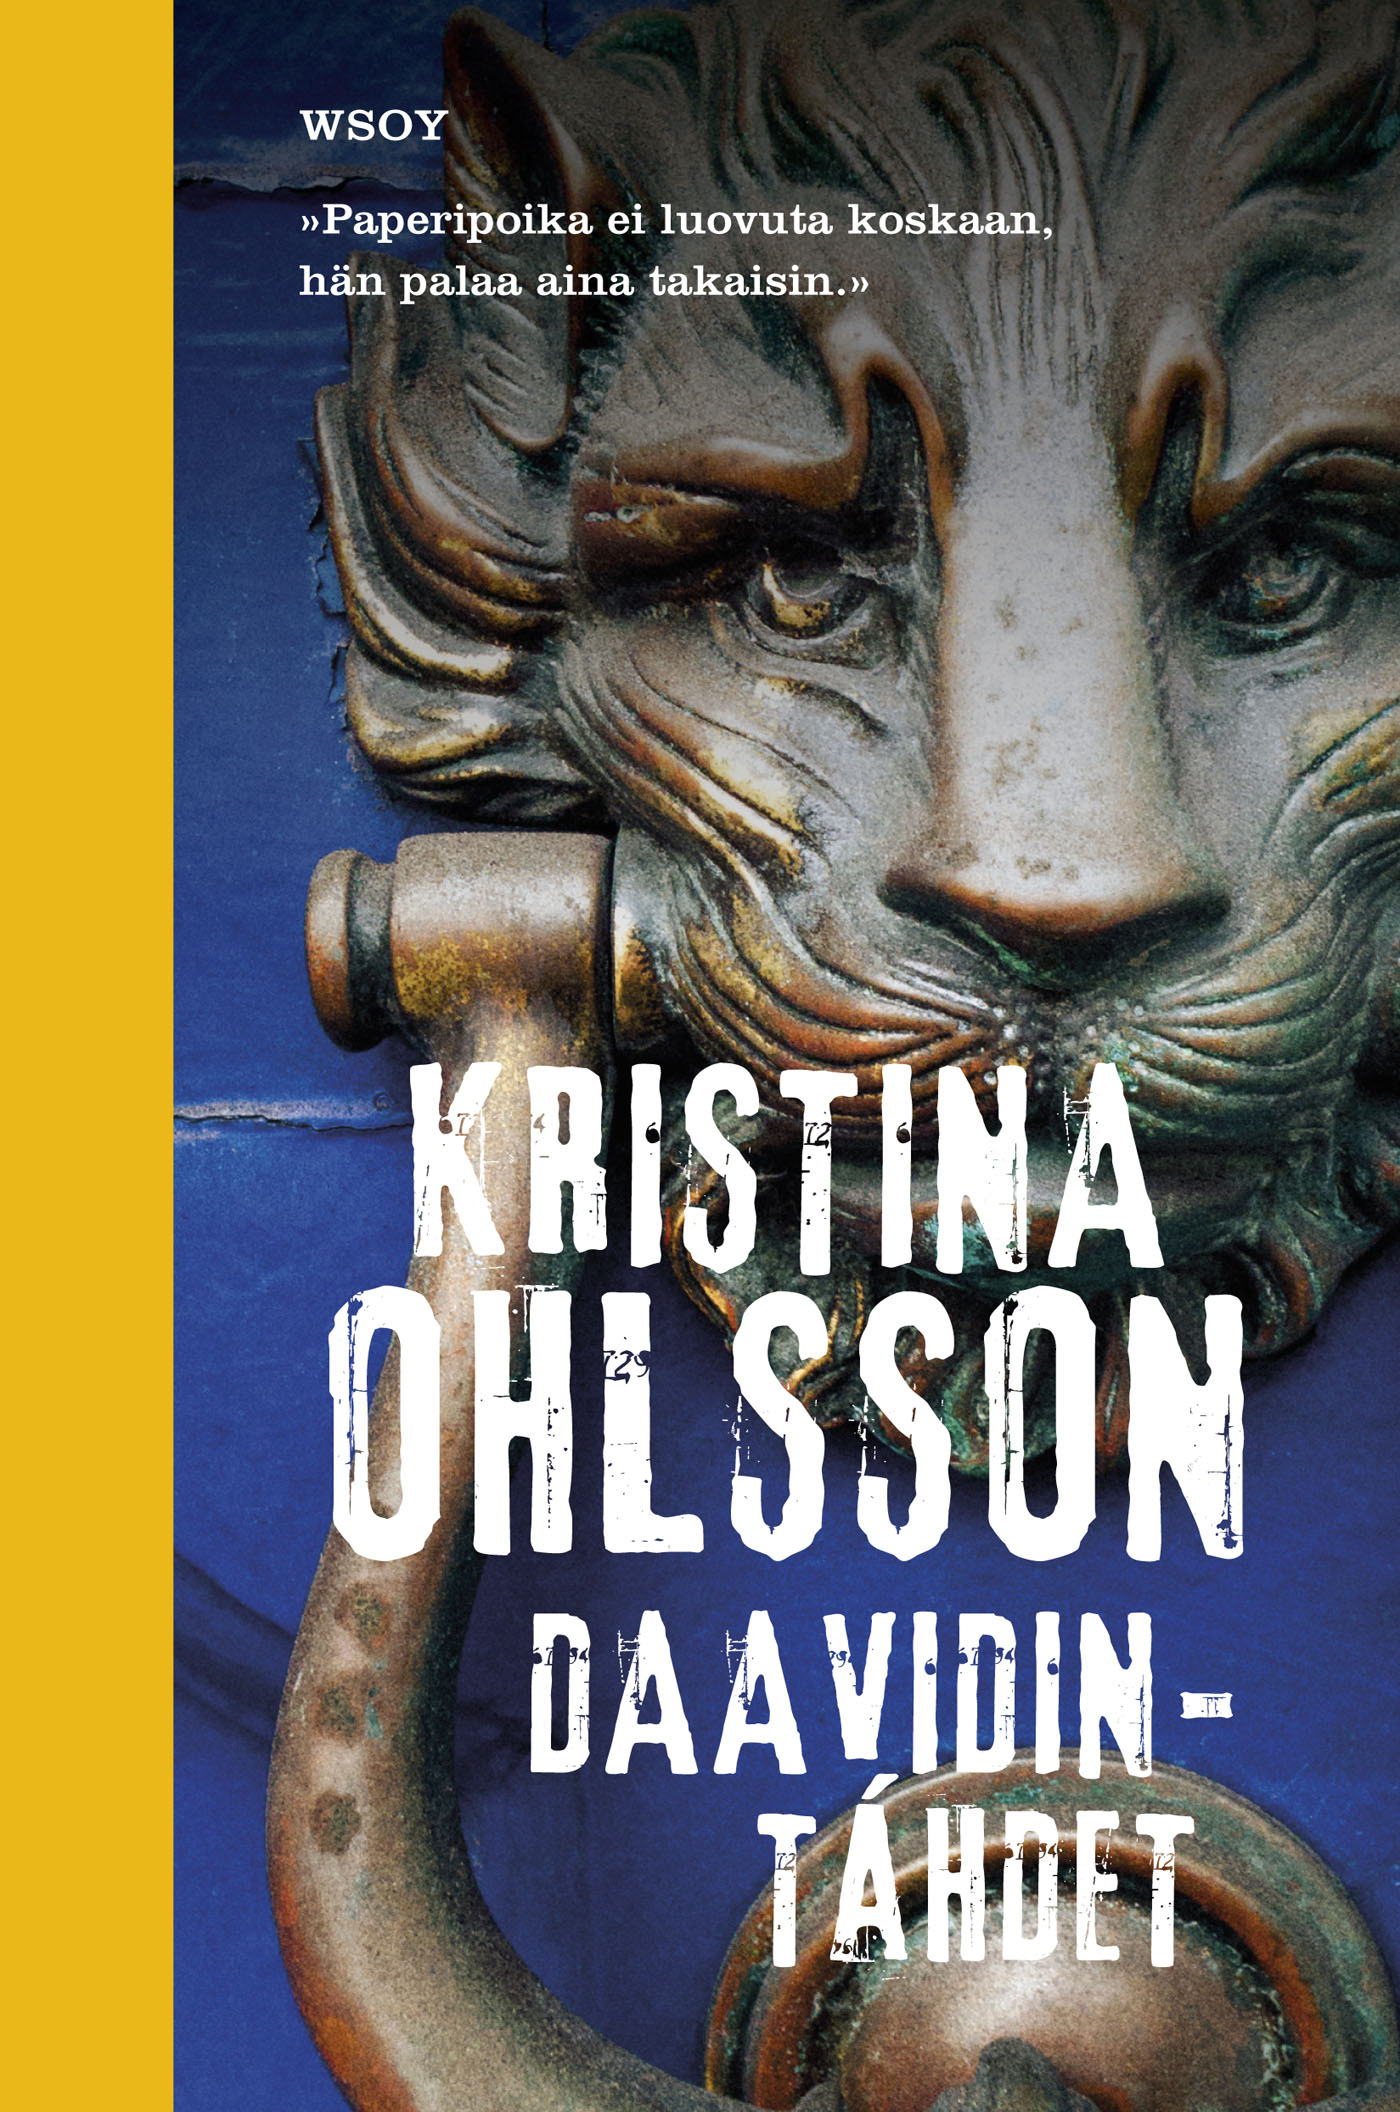 Ohlsson, Kristina - Daavidintähdet, e-bok